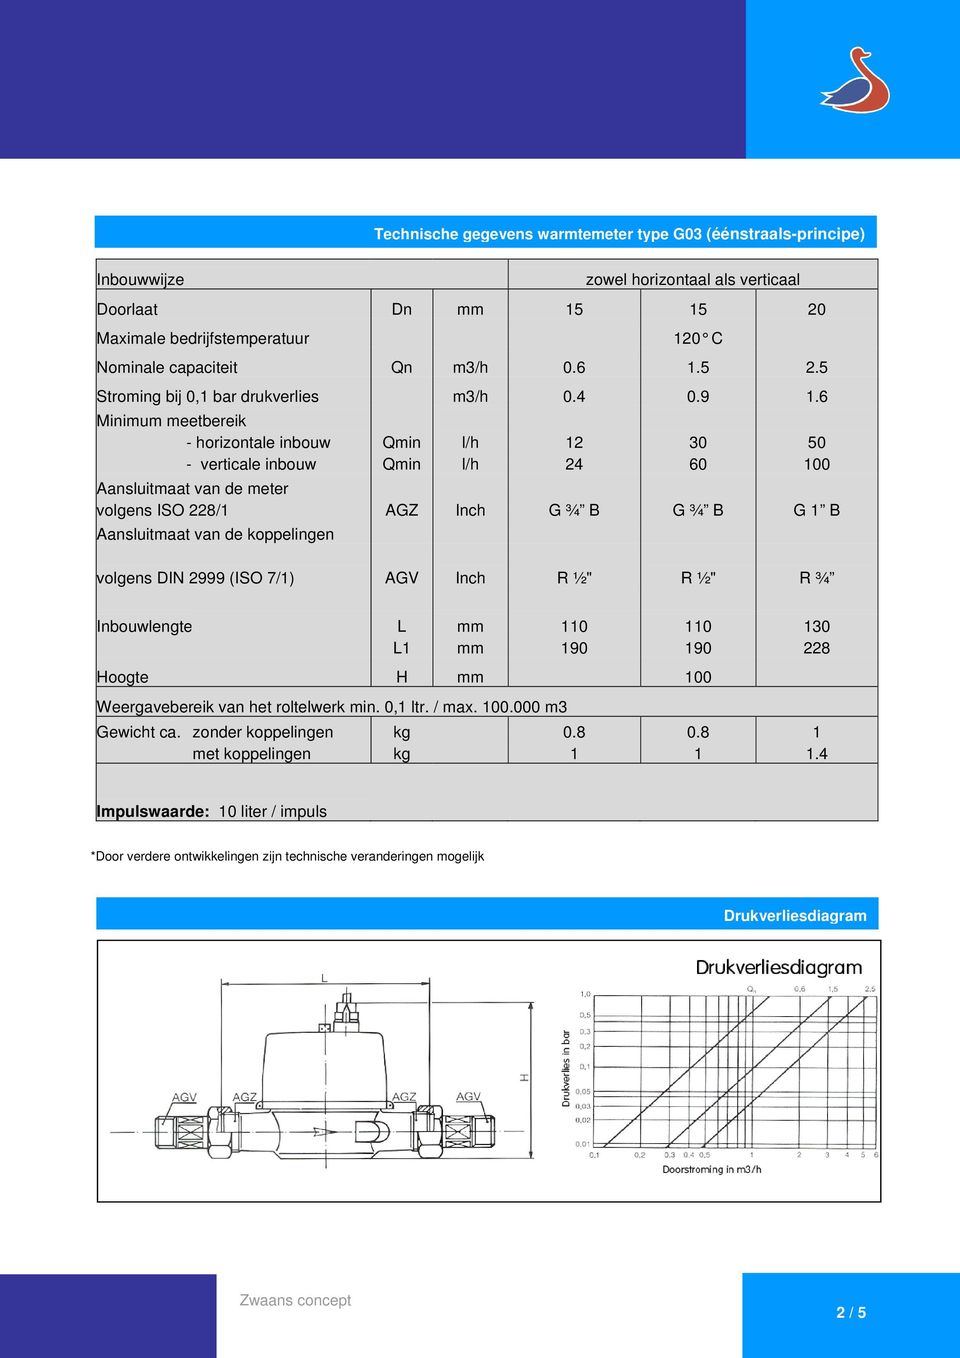 Minimum meetbereik - horizontale inbouw Qmin l/h 12 30 50 - verticale inbouw Qmin l/h 24 0 0 Aansluitmaat van de meter volgens ISO 228/1 AGZ Inch G ¾ B G ¾ B G 1 B Aansluitmaat van de koppelingen